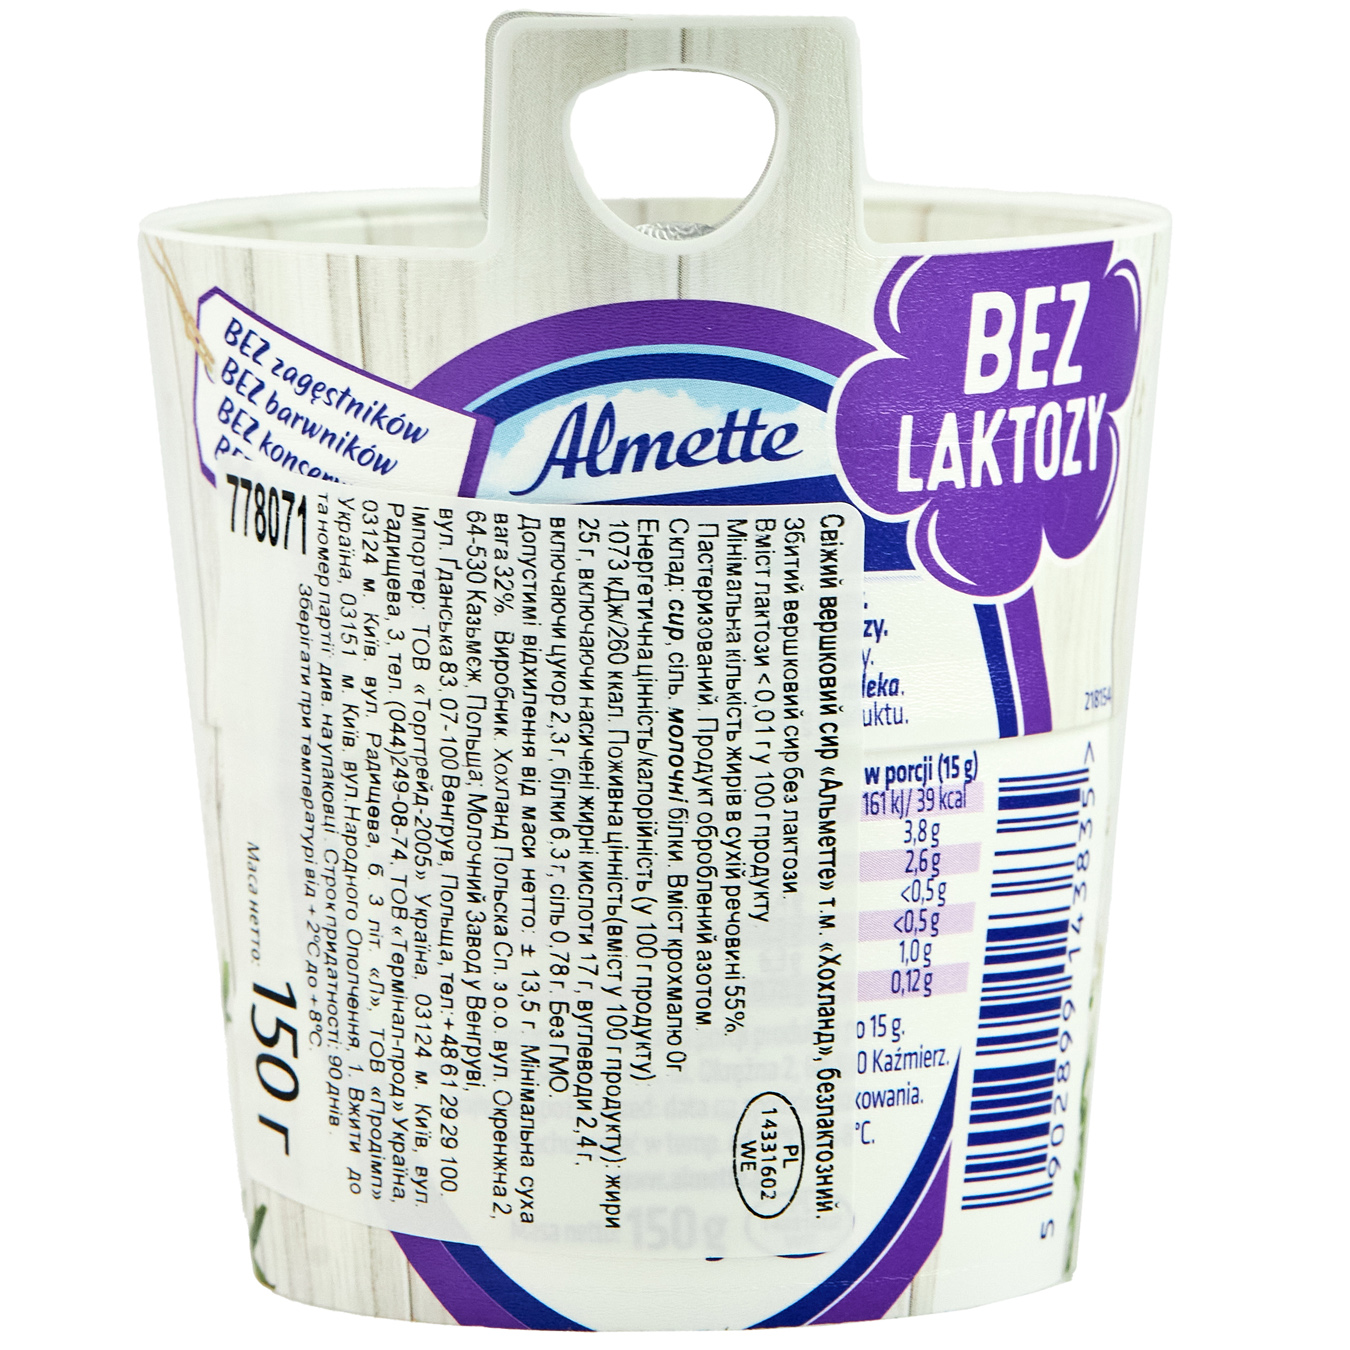 Hochland Almette cream lactose-free cheese 150g 2